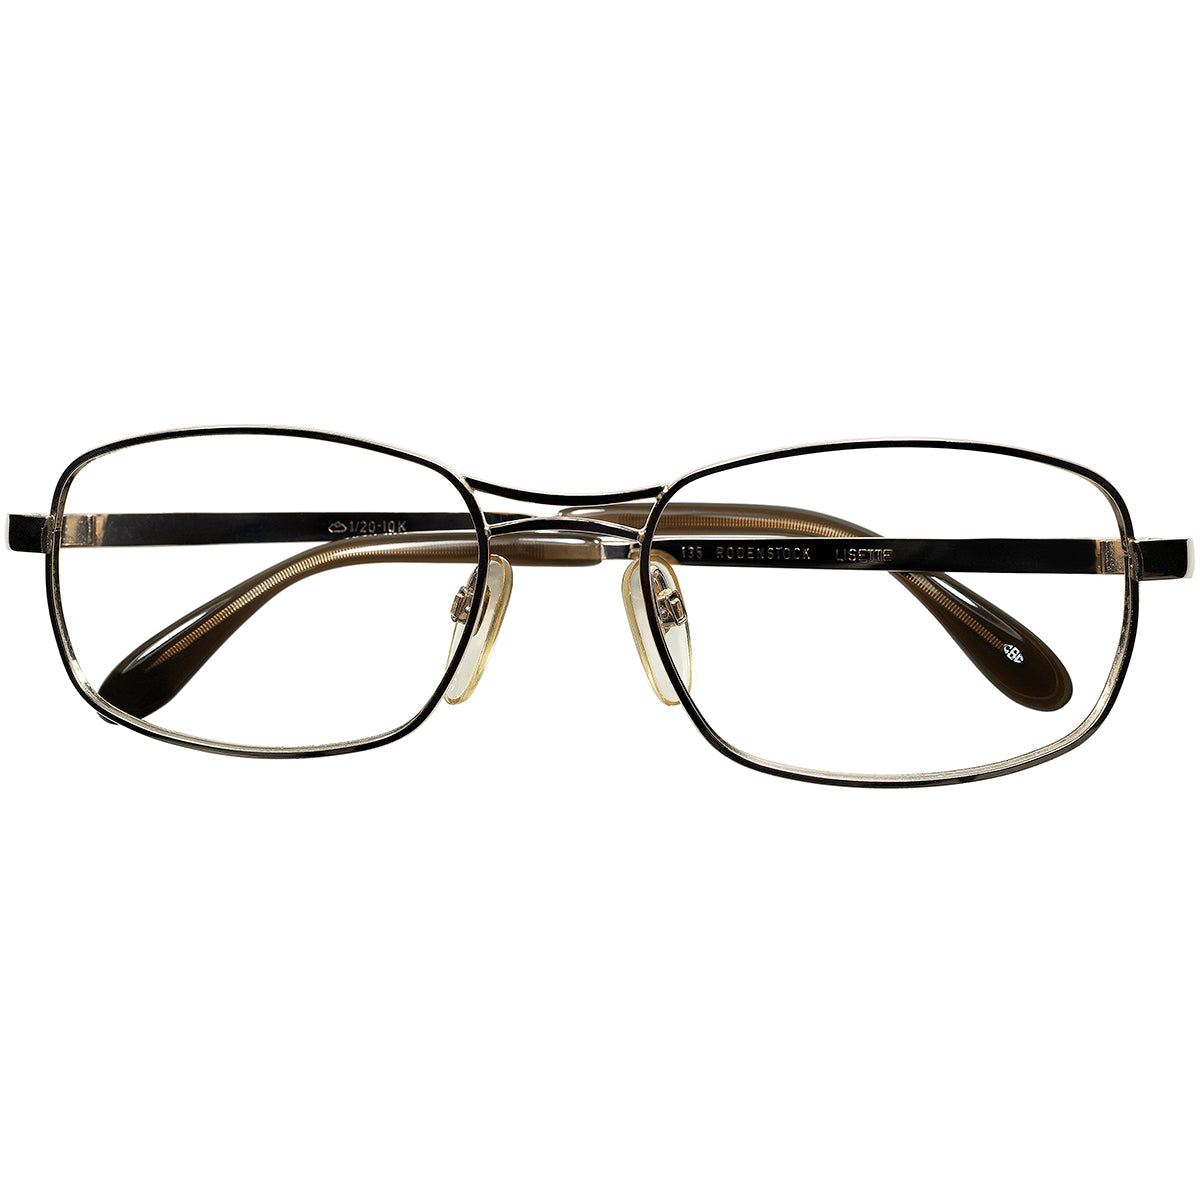 眼鏡としての段違いのポテンシャルの高さ 1960-70sデッドストック 西ドイツ製オリジナル RODENSTOCK ローデンストック LISETTE  1/20 10K金張size54/18 ビンテージ ヴィンテージ 眼鏡 メガネ 【a9228】